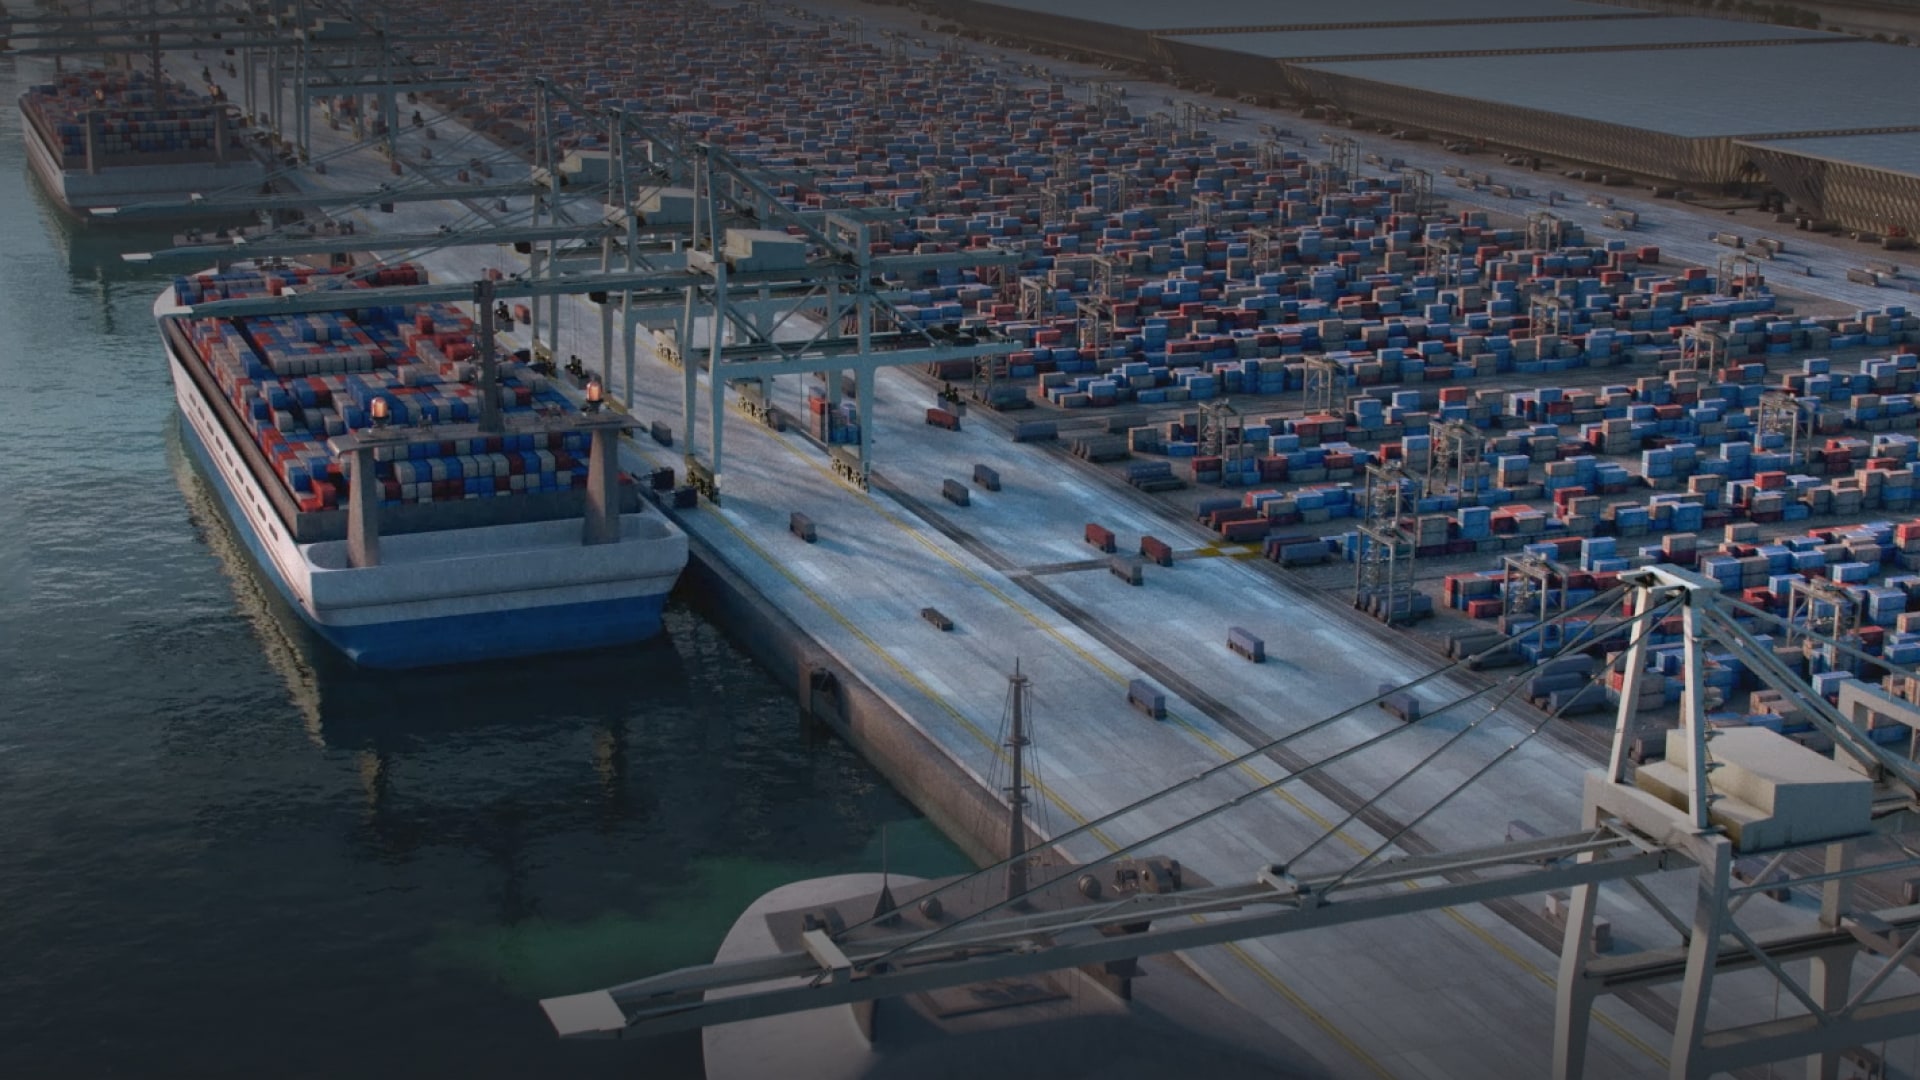 ميناء نيوم في أوكساچون: ميناء من الجيل التالي مع سلسلة توريد متكاملة